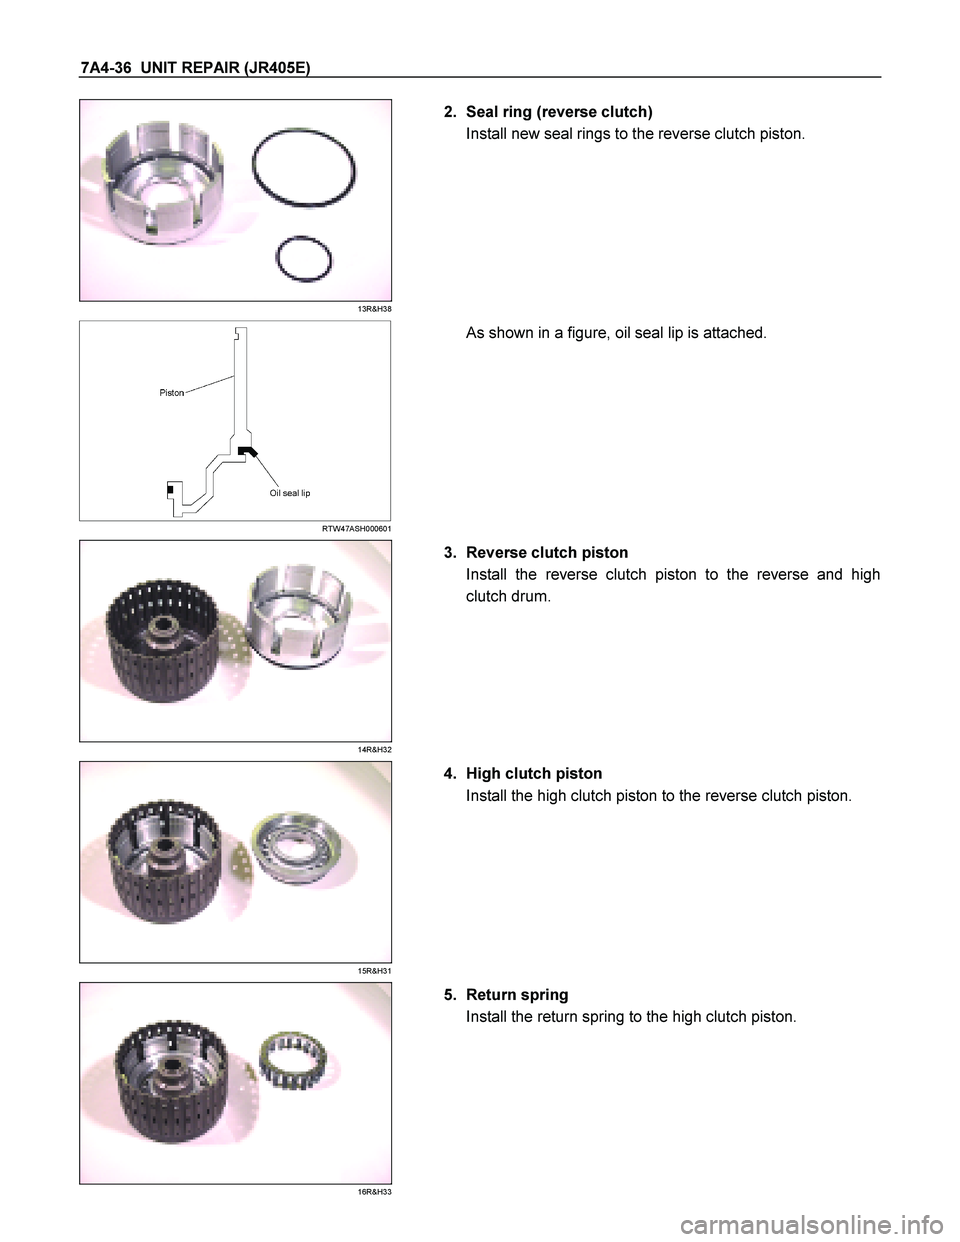 ISUZU TF SERIES 2004  Workshop Manual 7A4-36  UNIT REPAIR (JR405E) 
 
13R&H38 
  
   2.  Seal ring (reverse clutch)  
Install new seal rings to the reverse clutch piston. 
  
 
  
 
 RTW47ASH000601 
     As shown in a figure, oil seal lip